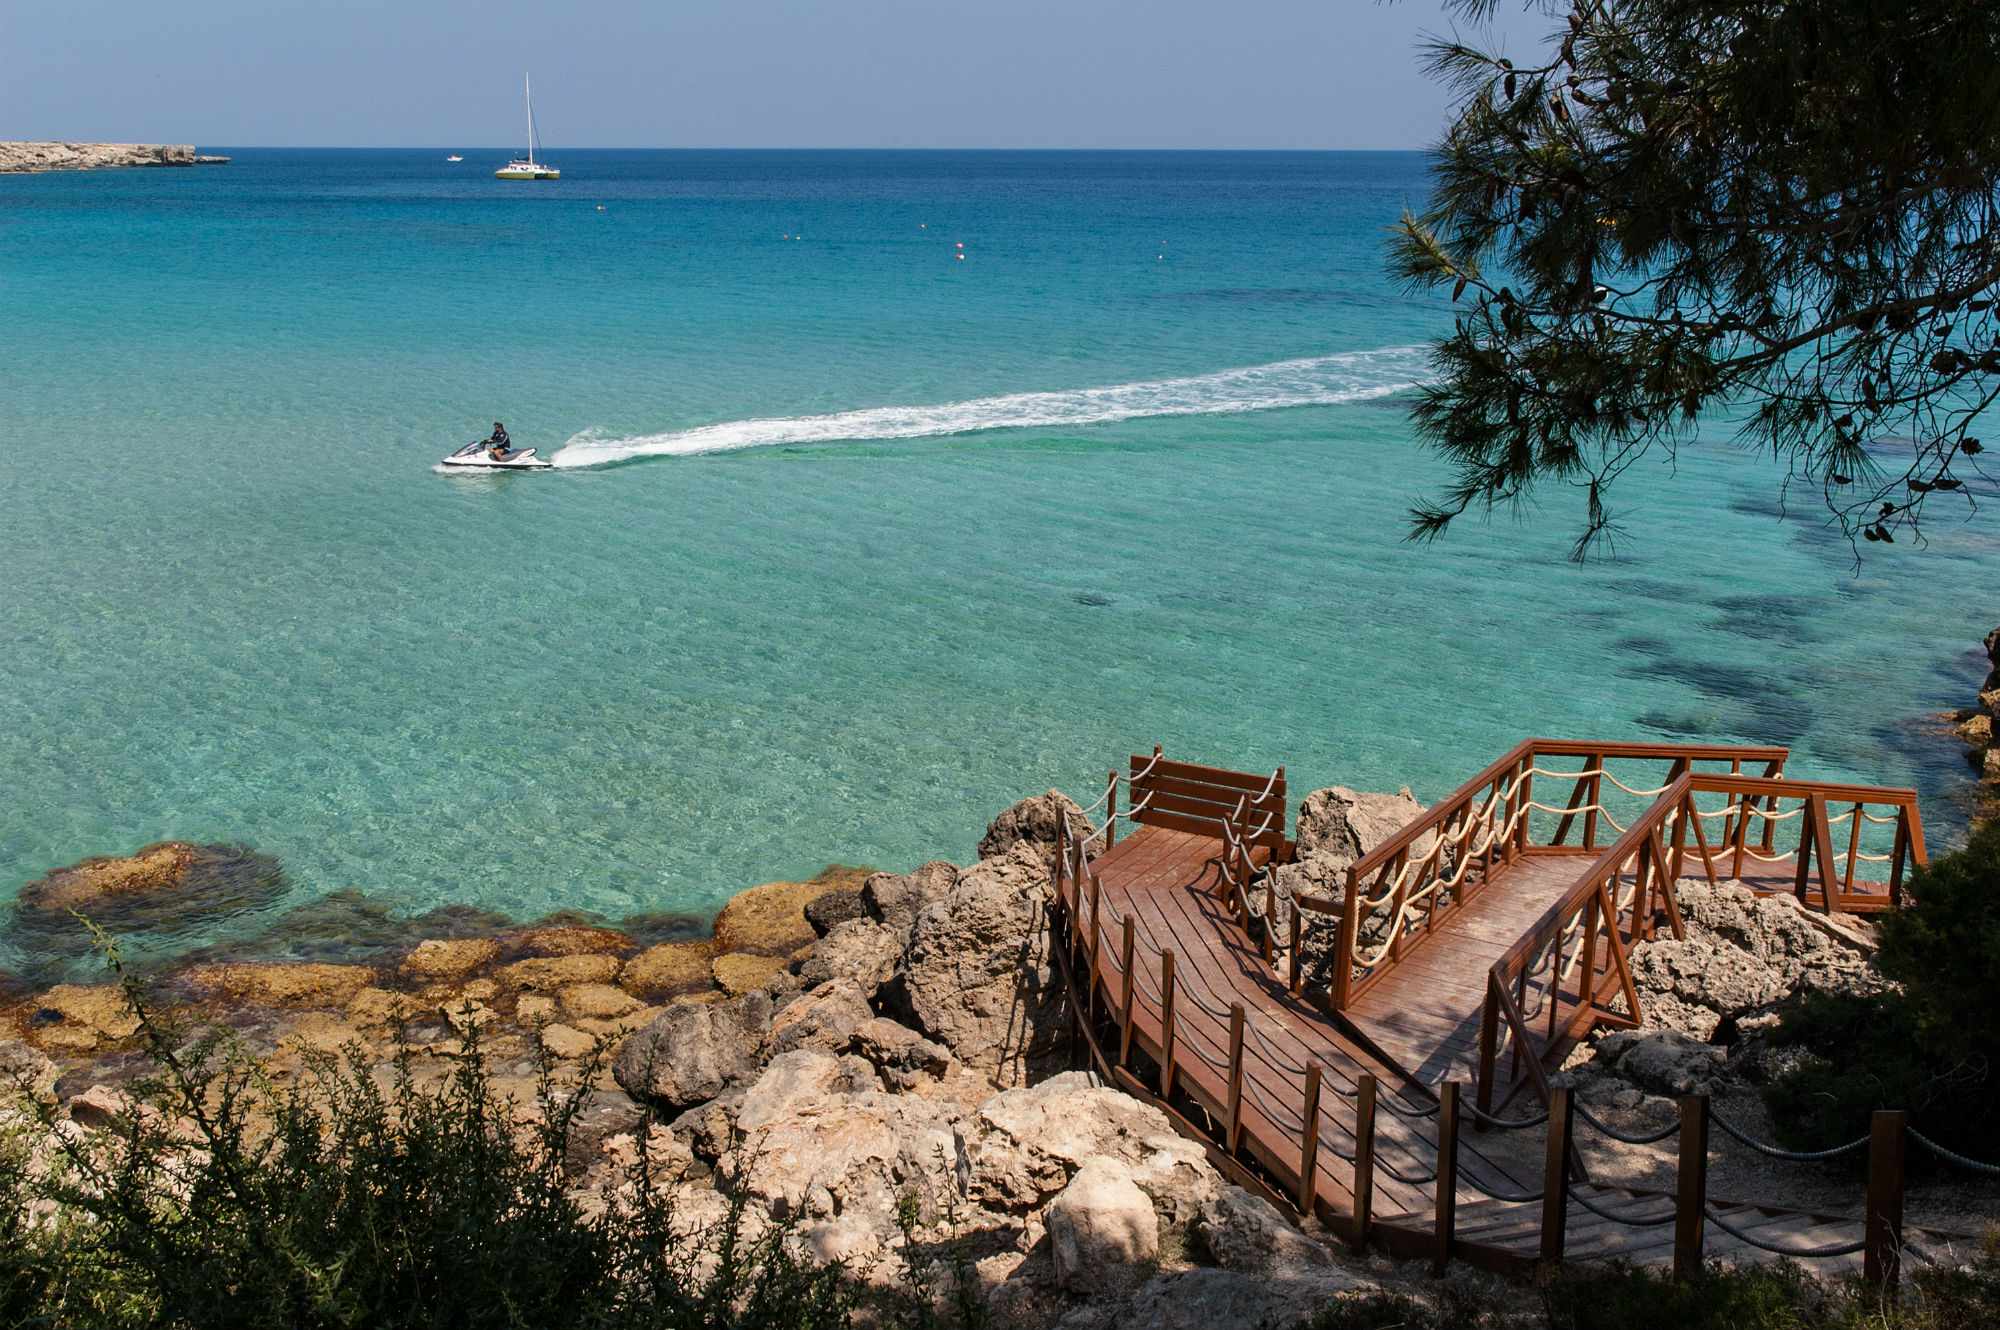 3 Παραλίες στην Κύπρο που πρέπει να επισκεφτείς (Φωτογραφίες)